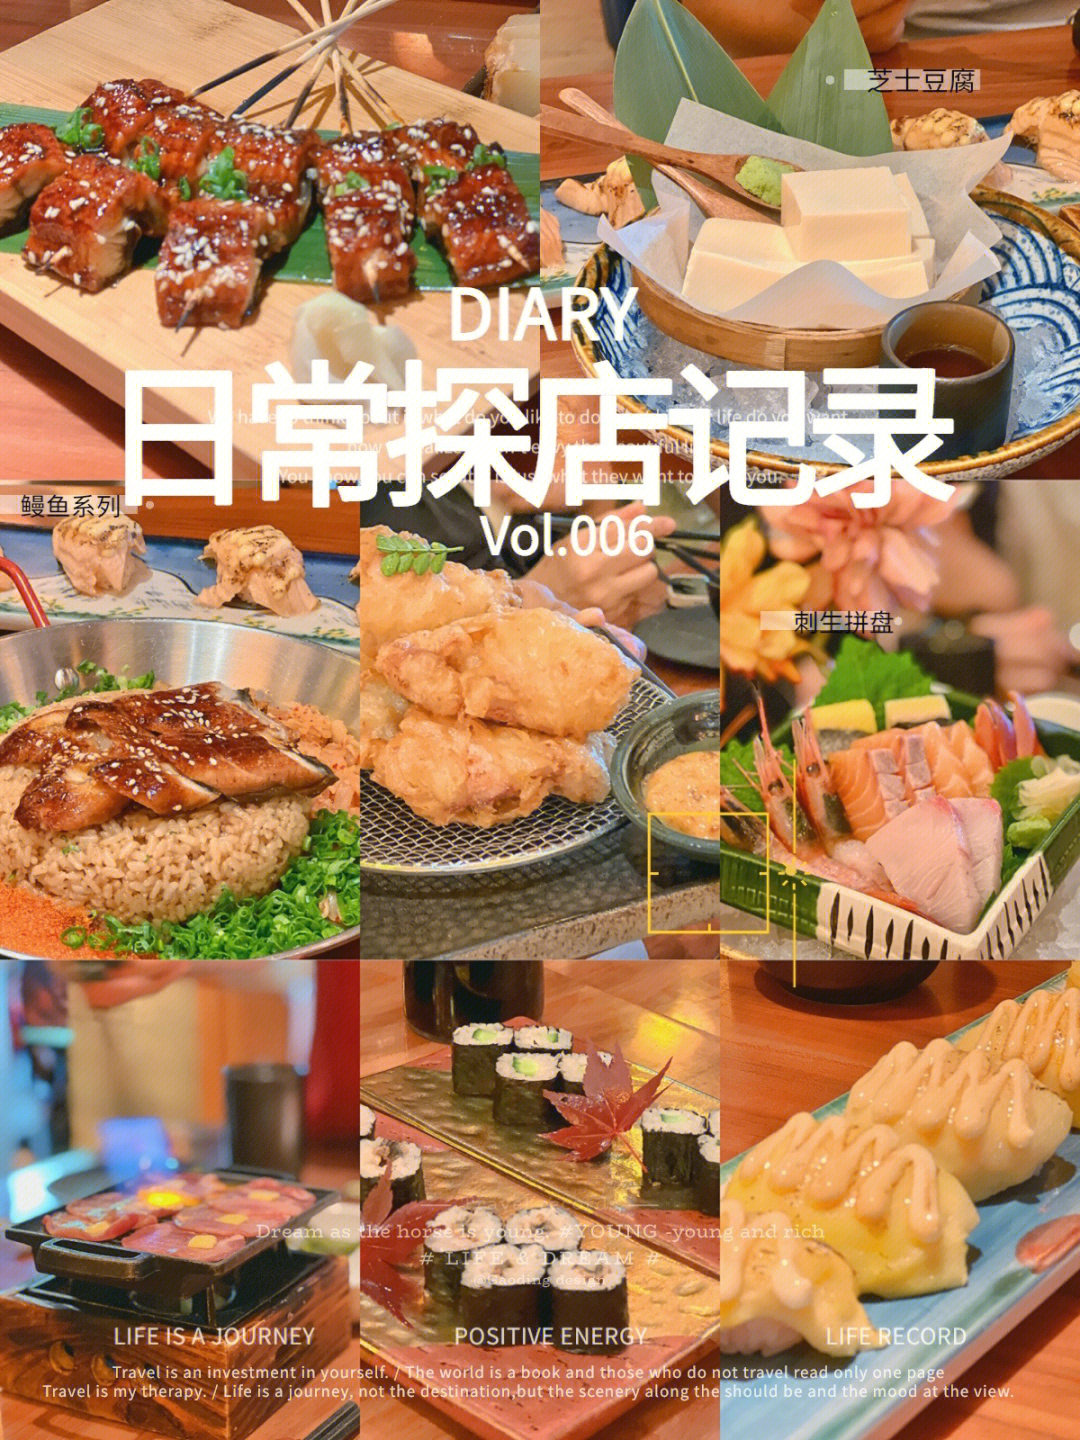 广州摩打食堂菜单图片